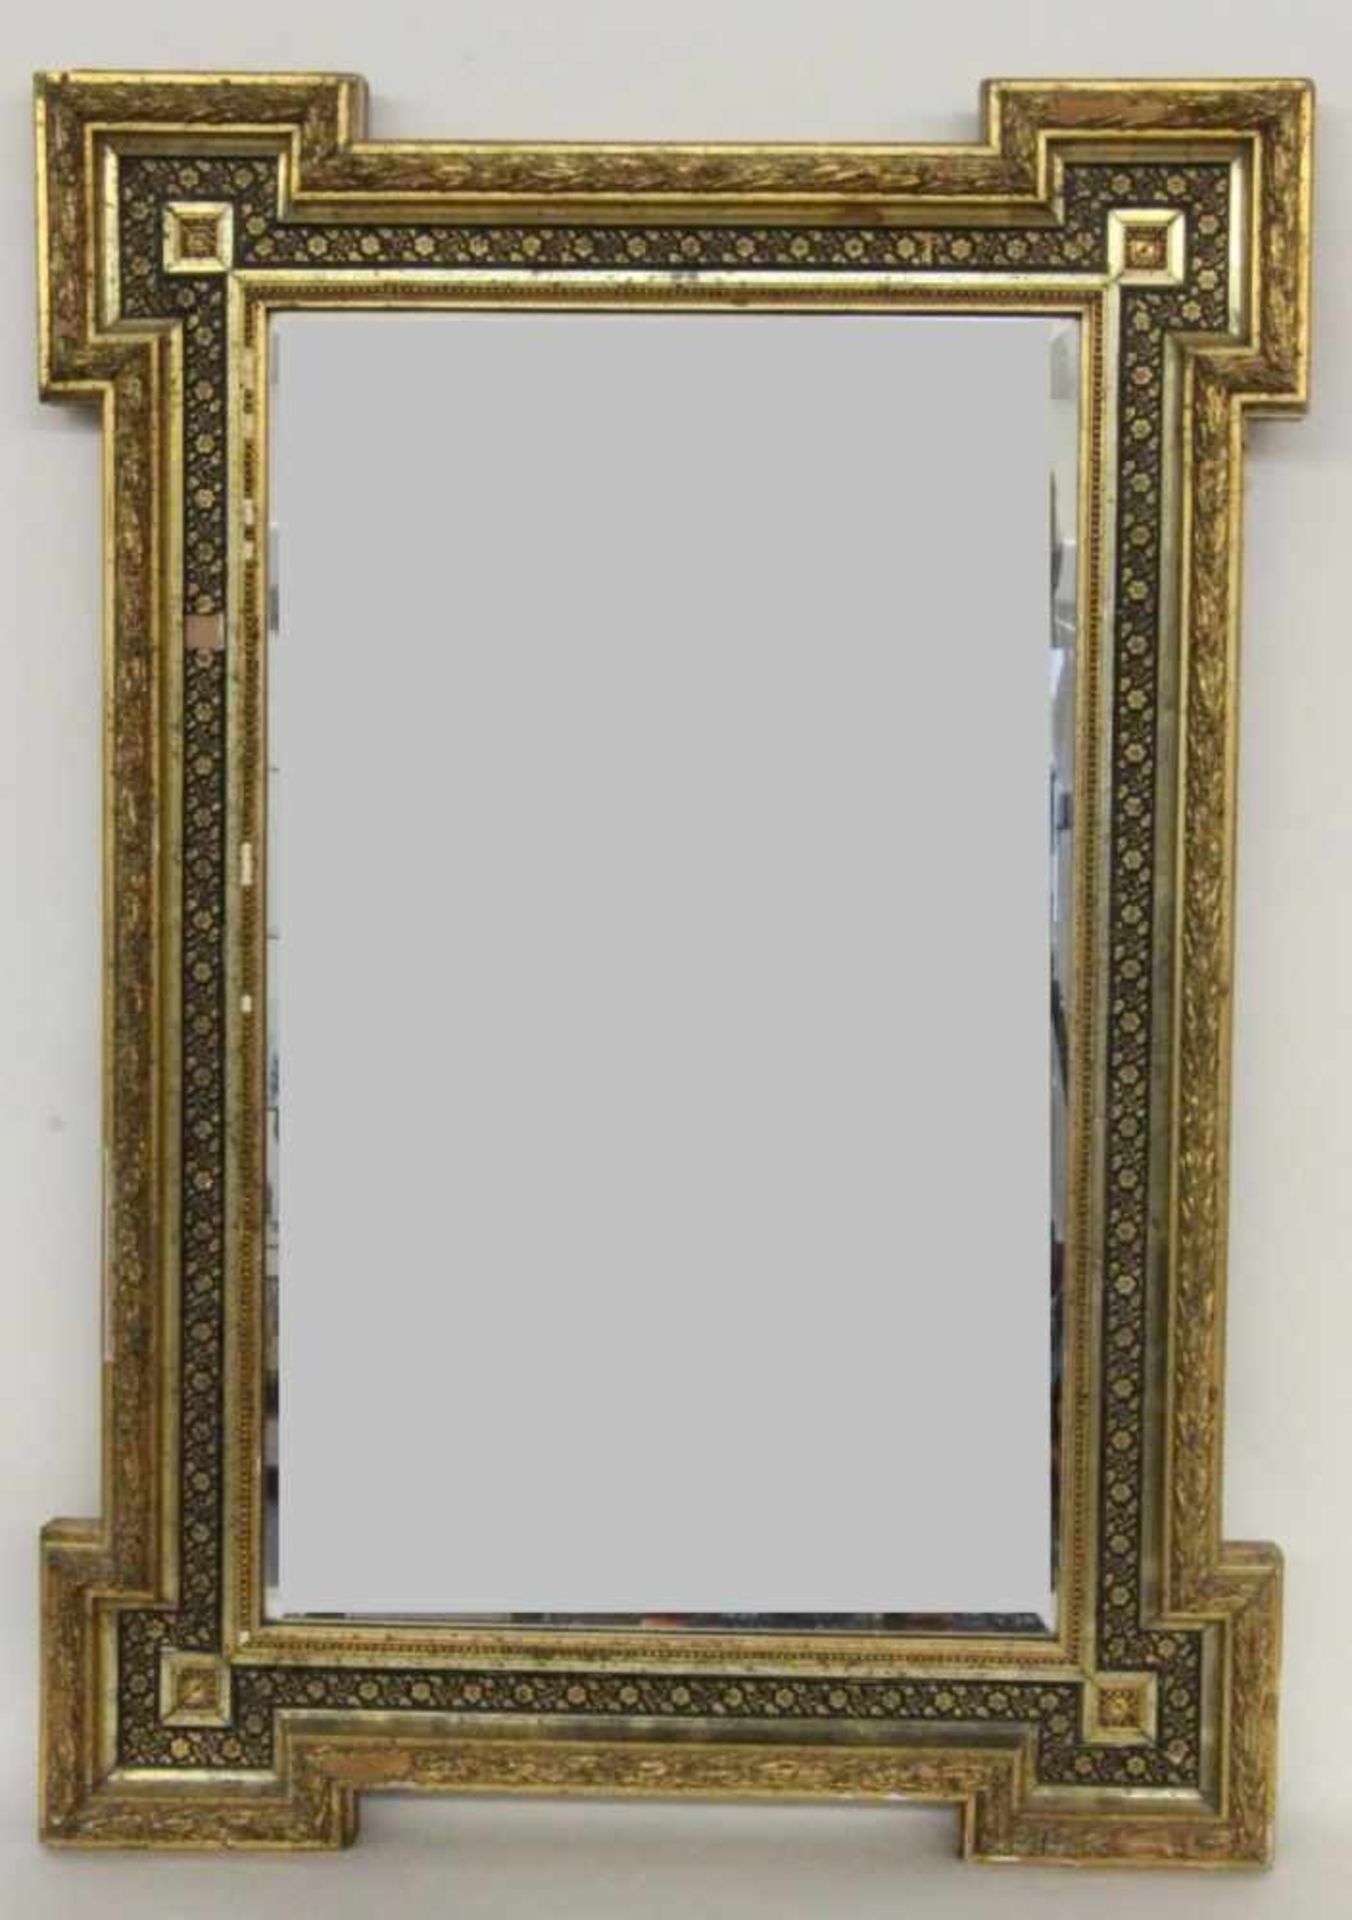 WANDSPIEGEL um 1900 Rechteckform mit facettiertem Spiegelglas und vergoldetem Stuckrahmen. 90x62cm